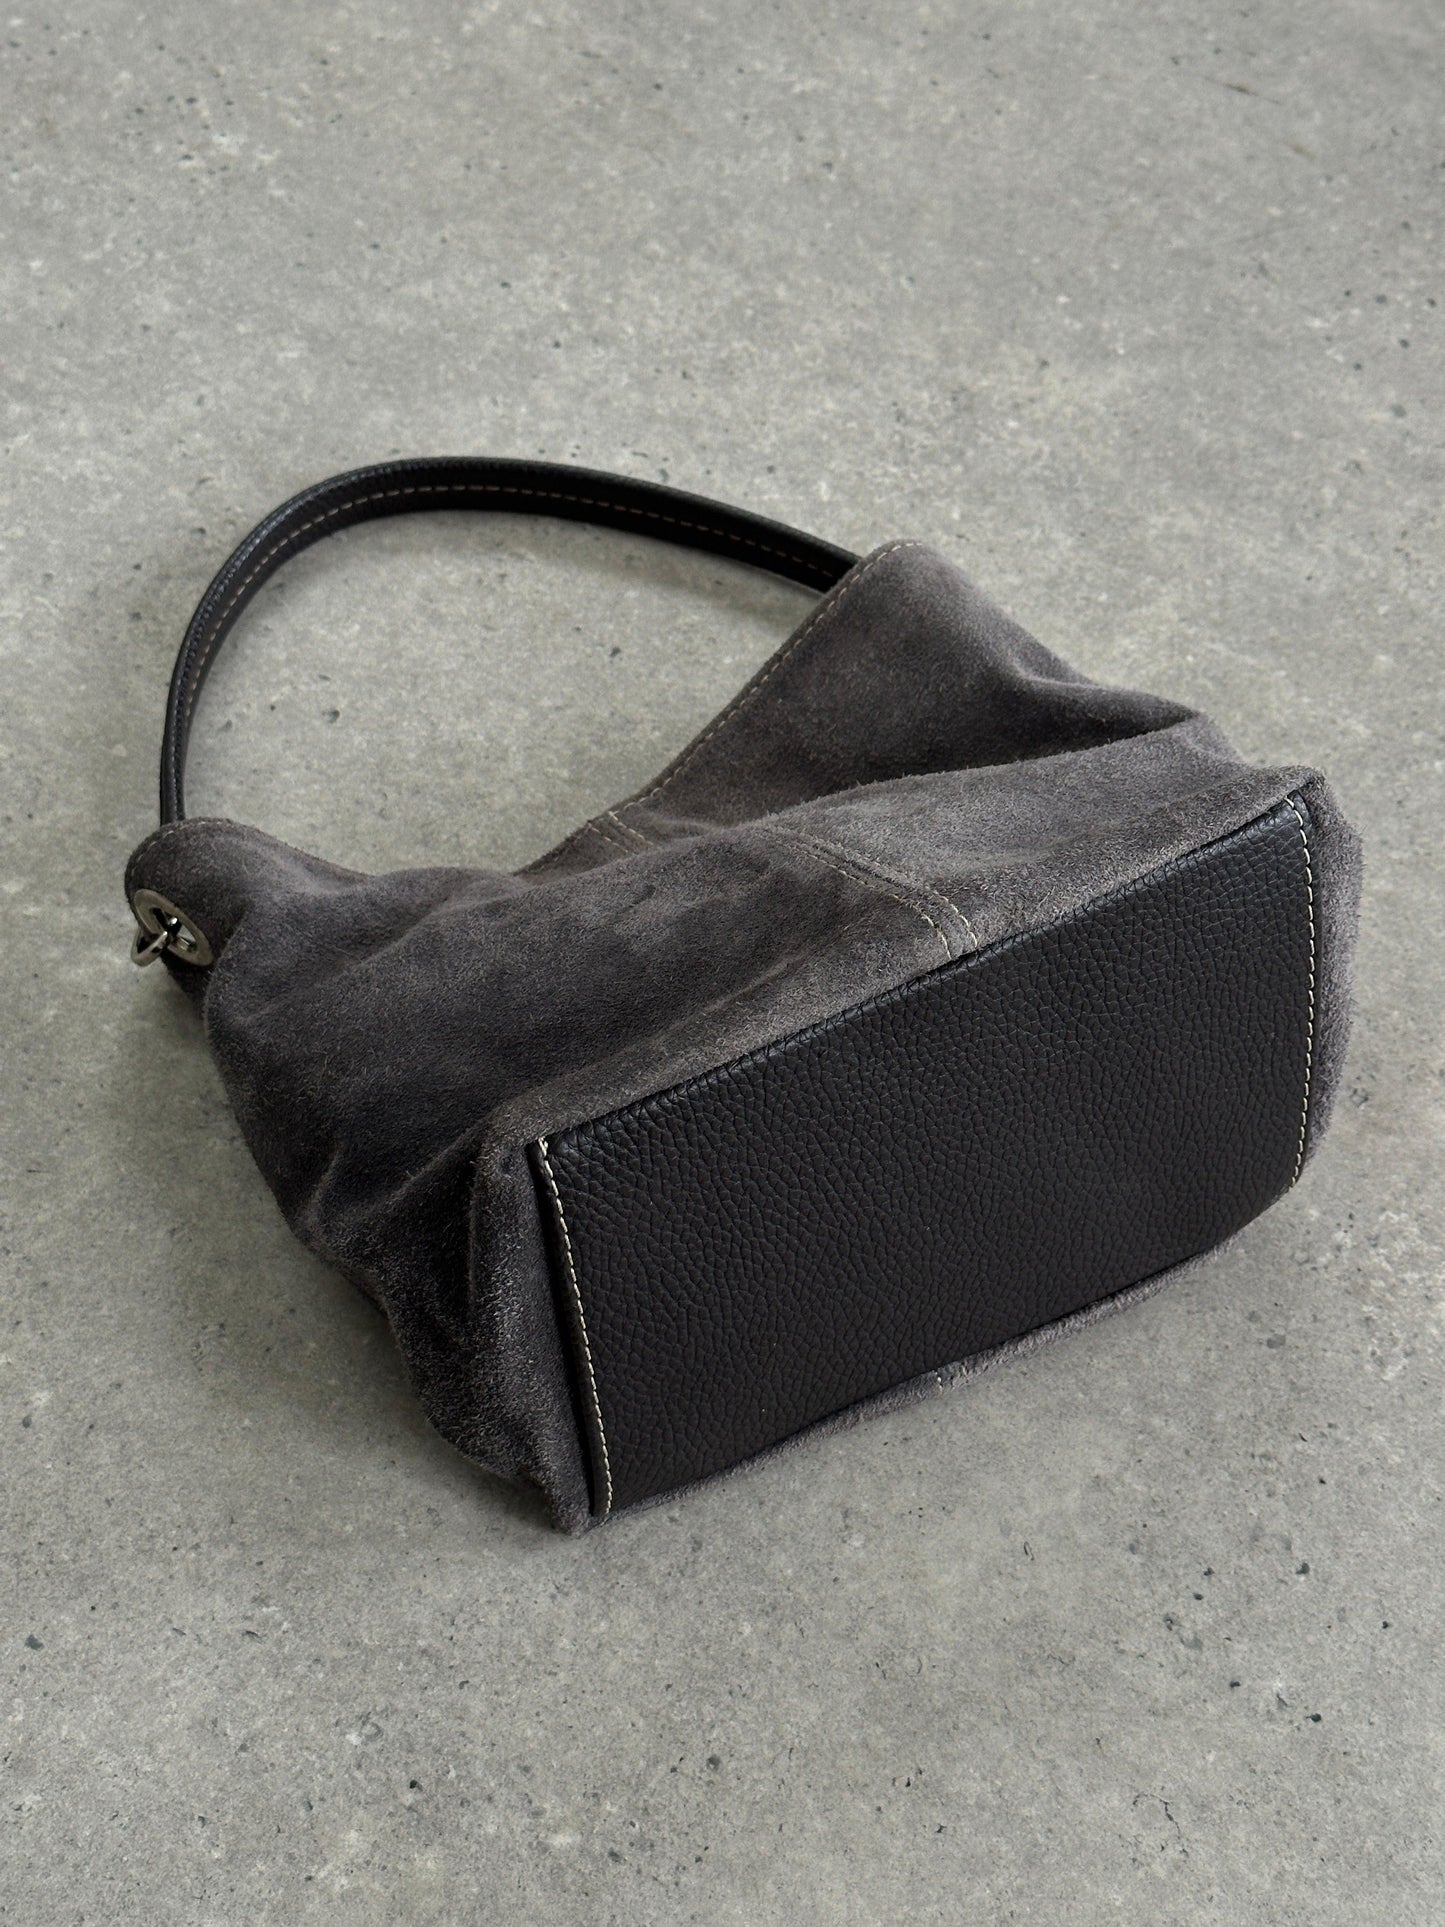 Vintage Suede Leather Shoulder Bag - Known Source